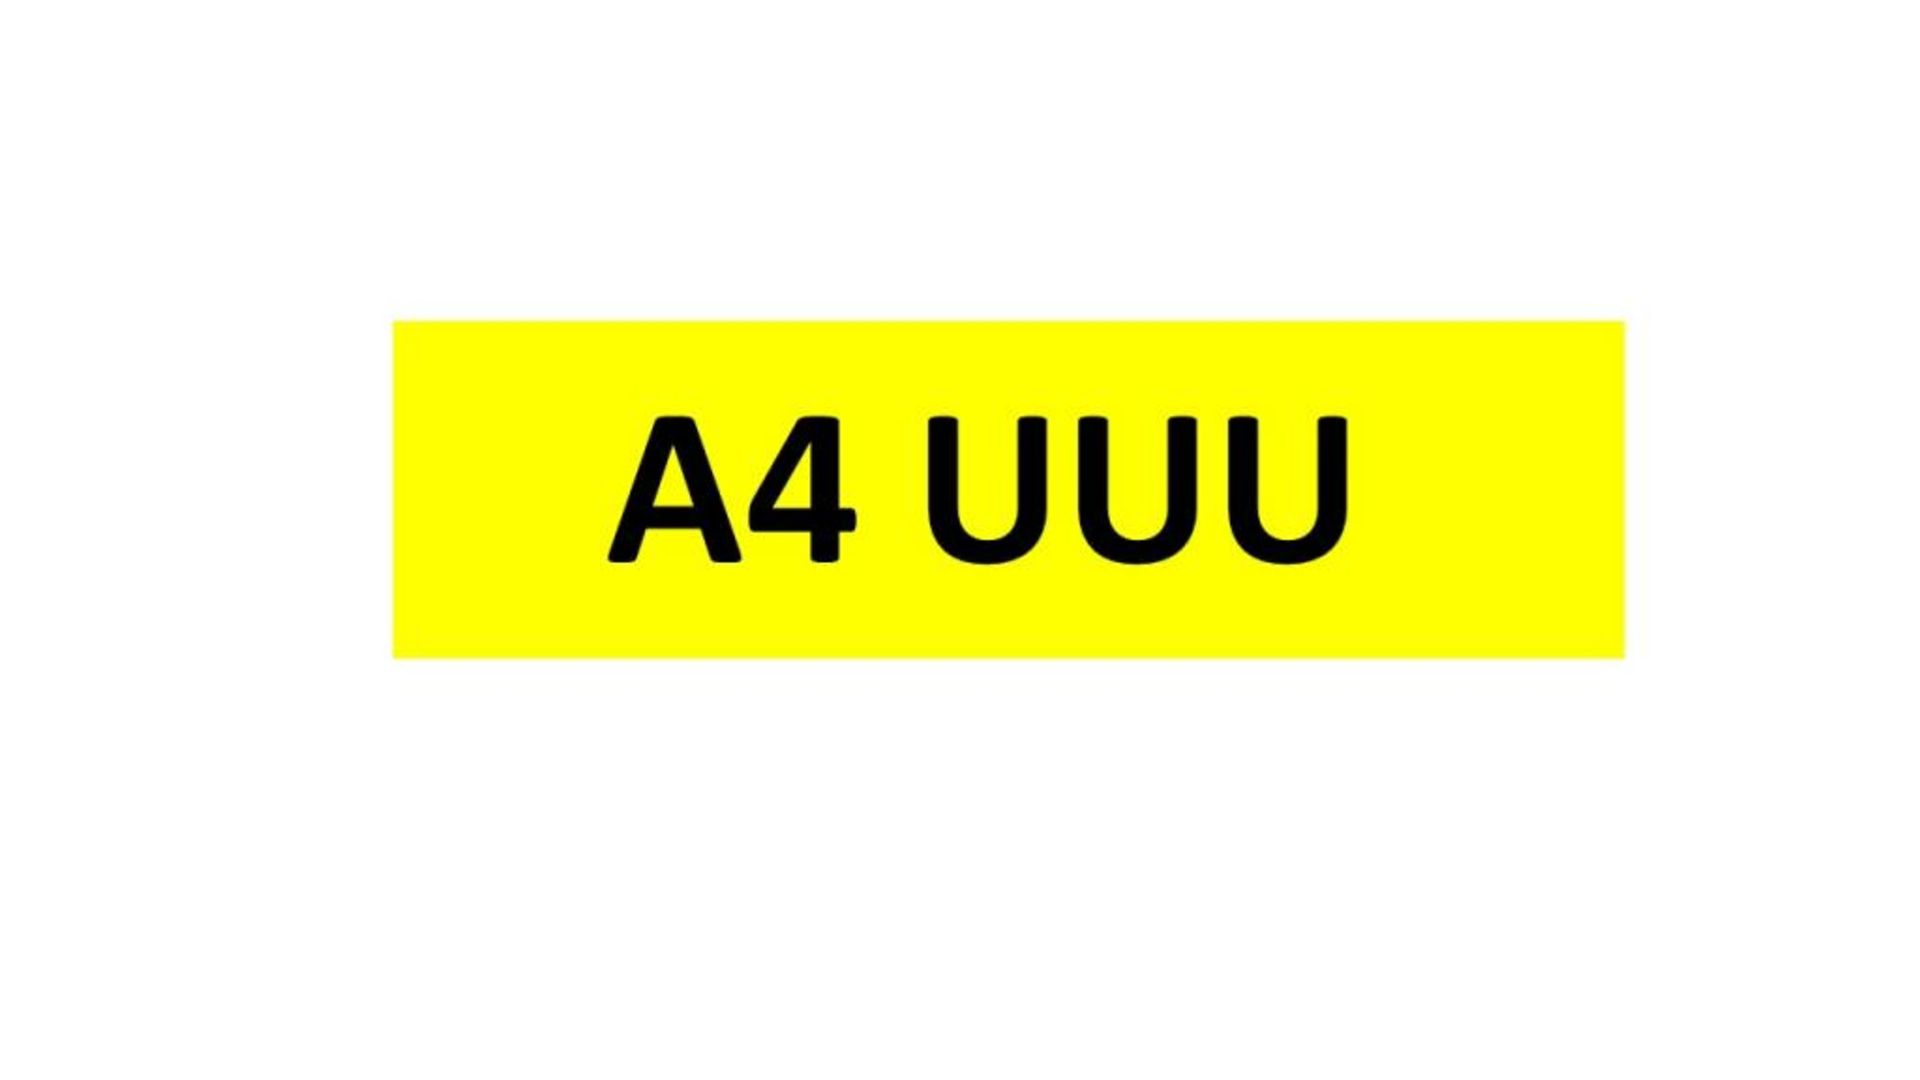 REGISTRATION - A4 UUU